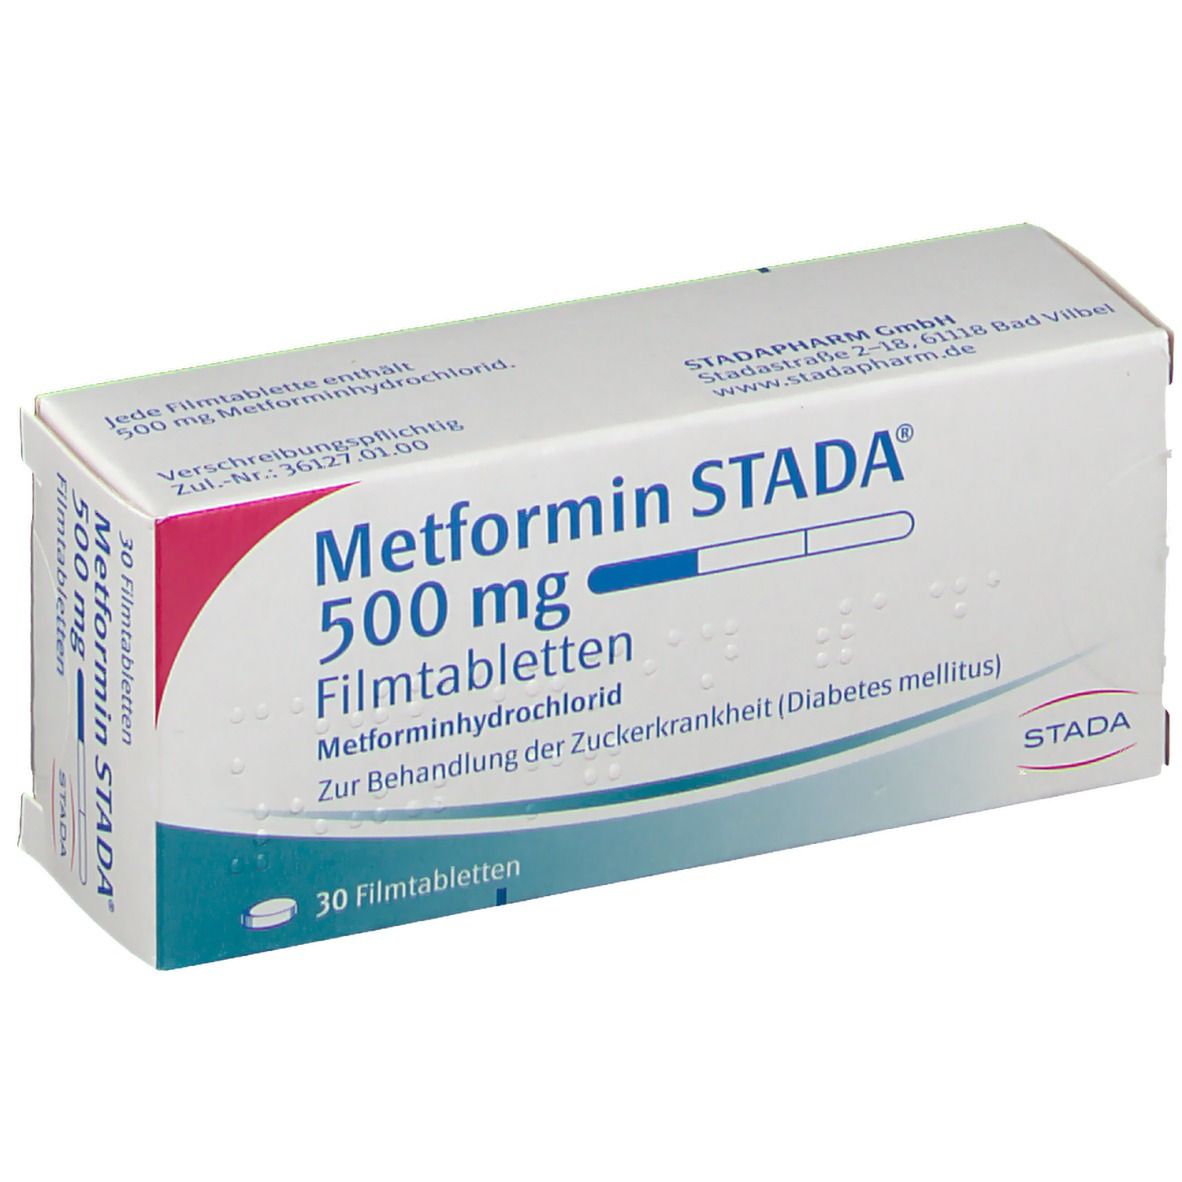 Metformin- a fogyásban is segíti a cukorbetegeket